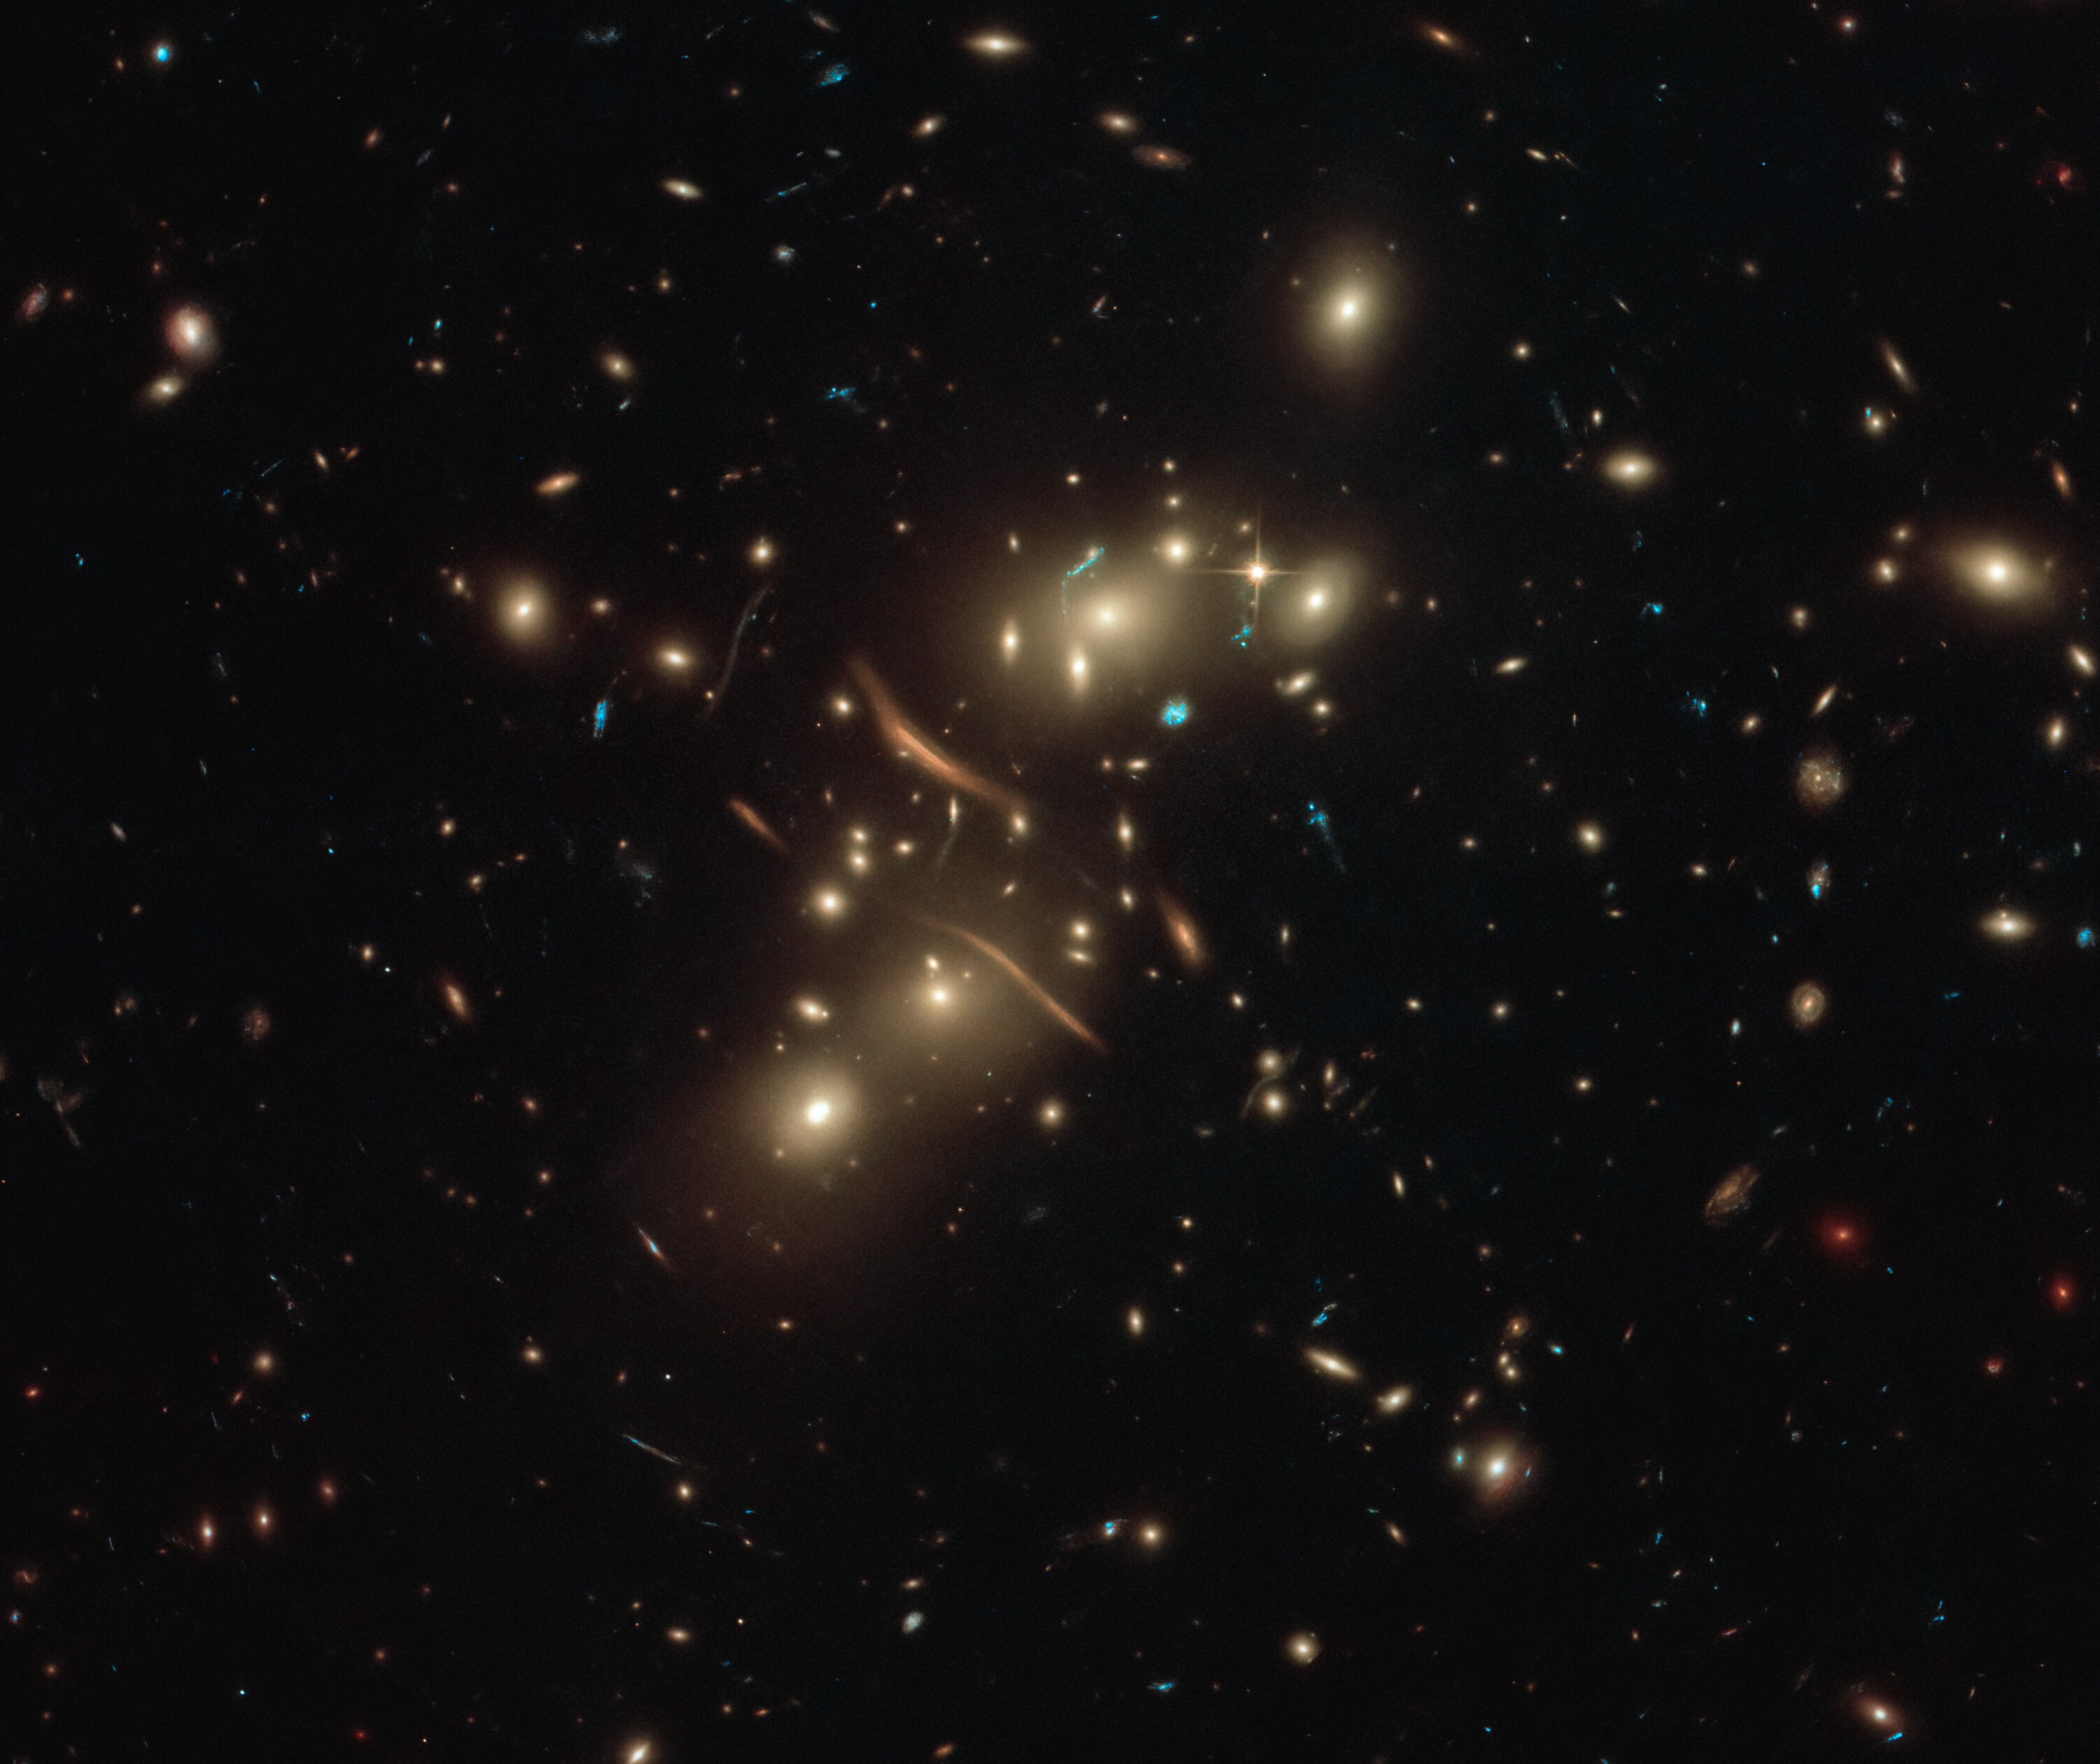 Imagem do conglomerado de galáxias Abell 2813 demonstra as lentes gravitacionais (Foto: ESA/Hubble & NASA, D. Coe)